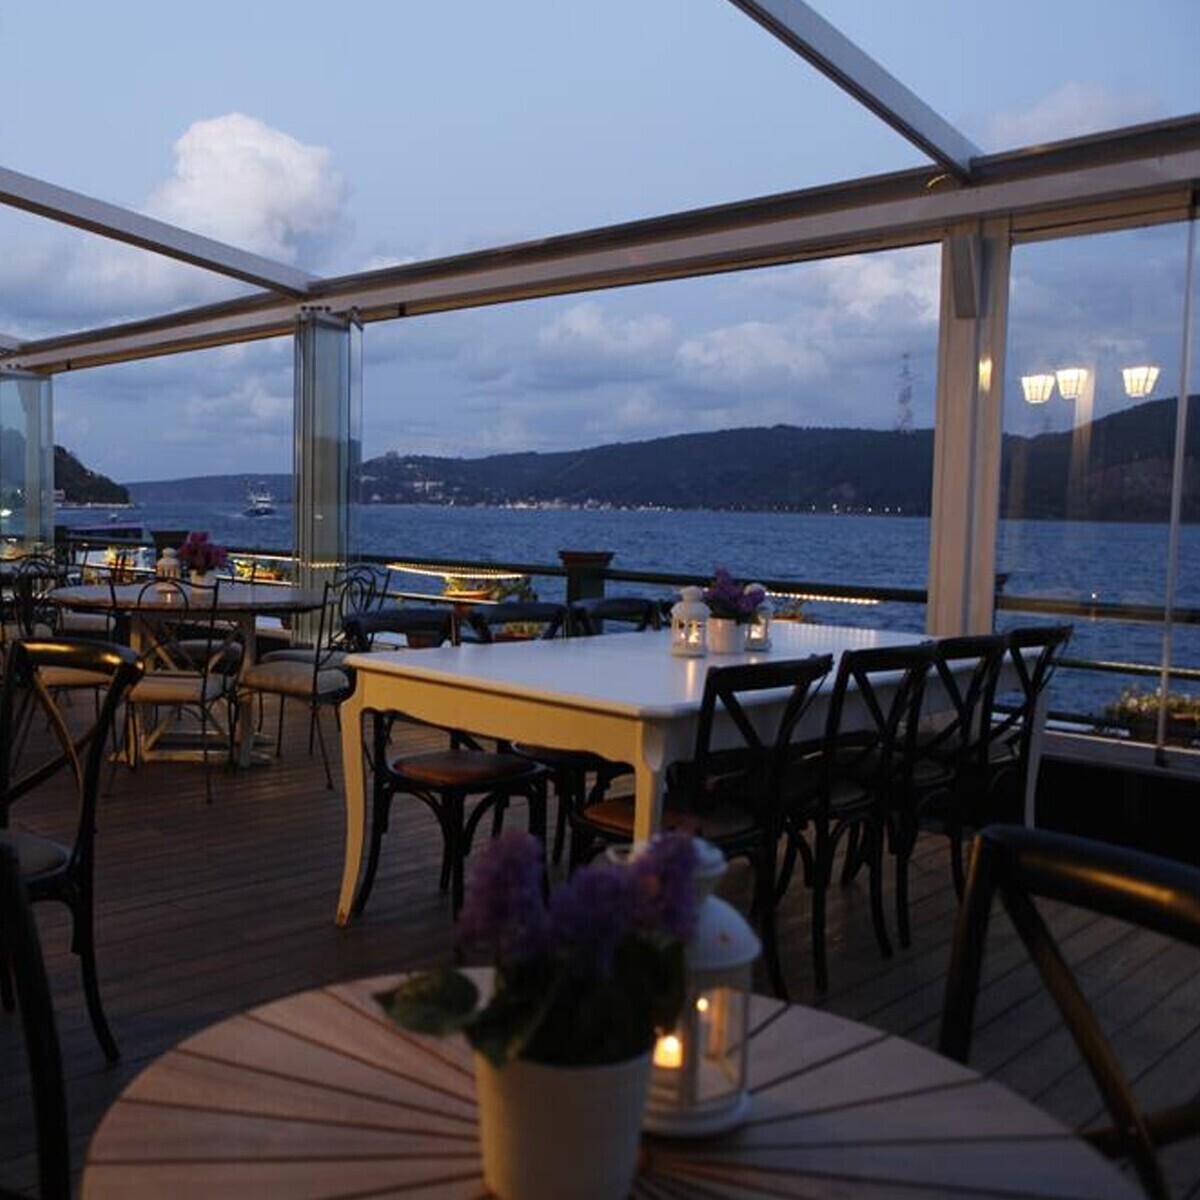 Göze Sarıyer Cafe'de Eşsiz Deniz Manzarası Eşliğinde Tadına Doyulmaz Lezzetlerle Dolu İftar Menüsü